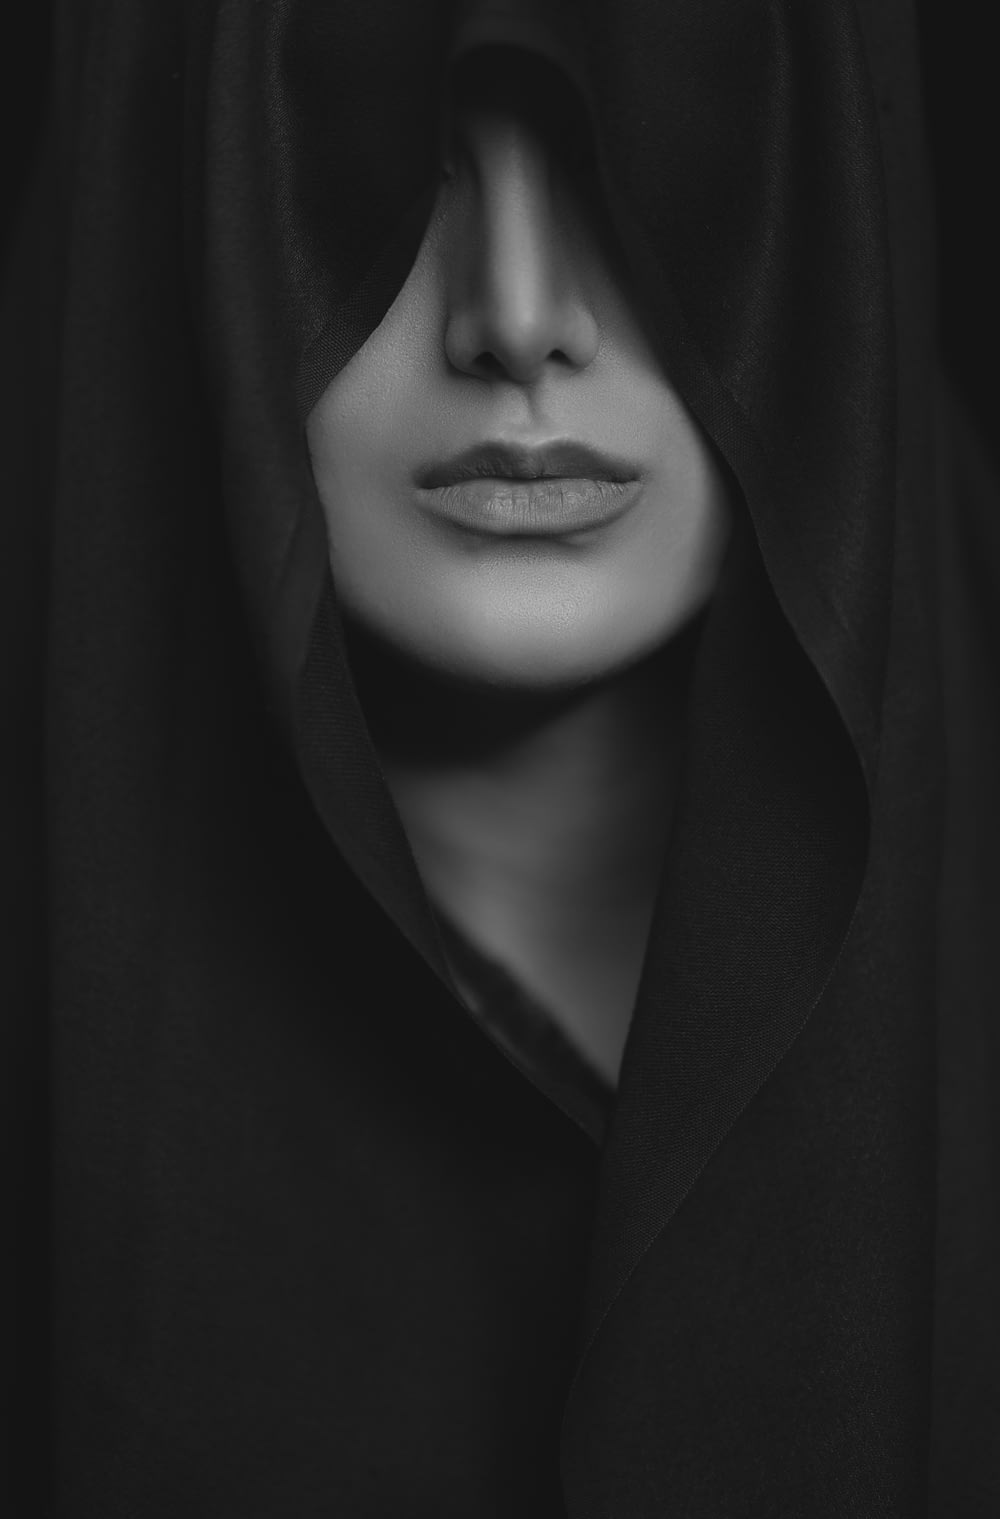 mulher no casaco preto na fotografia em tons de cinza